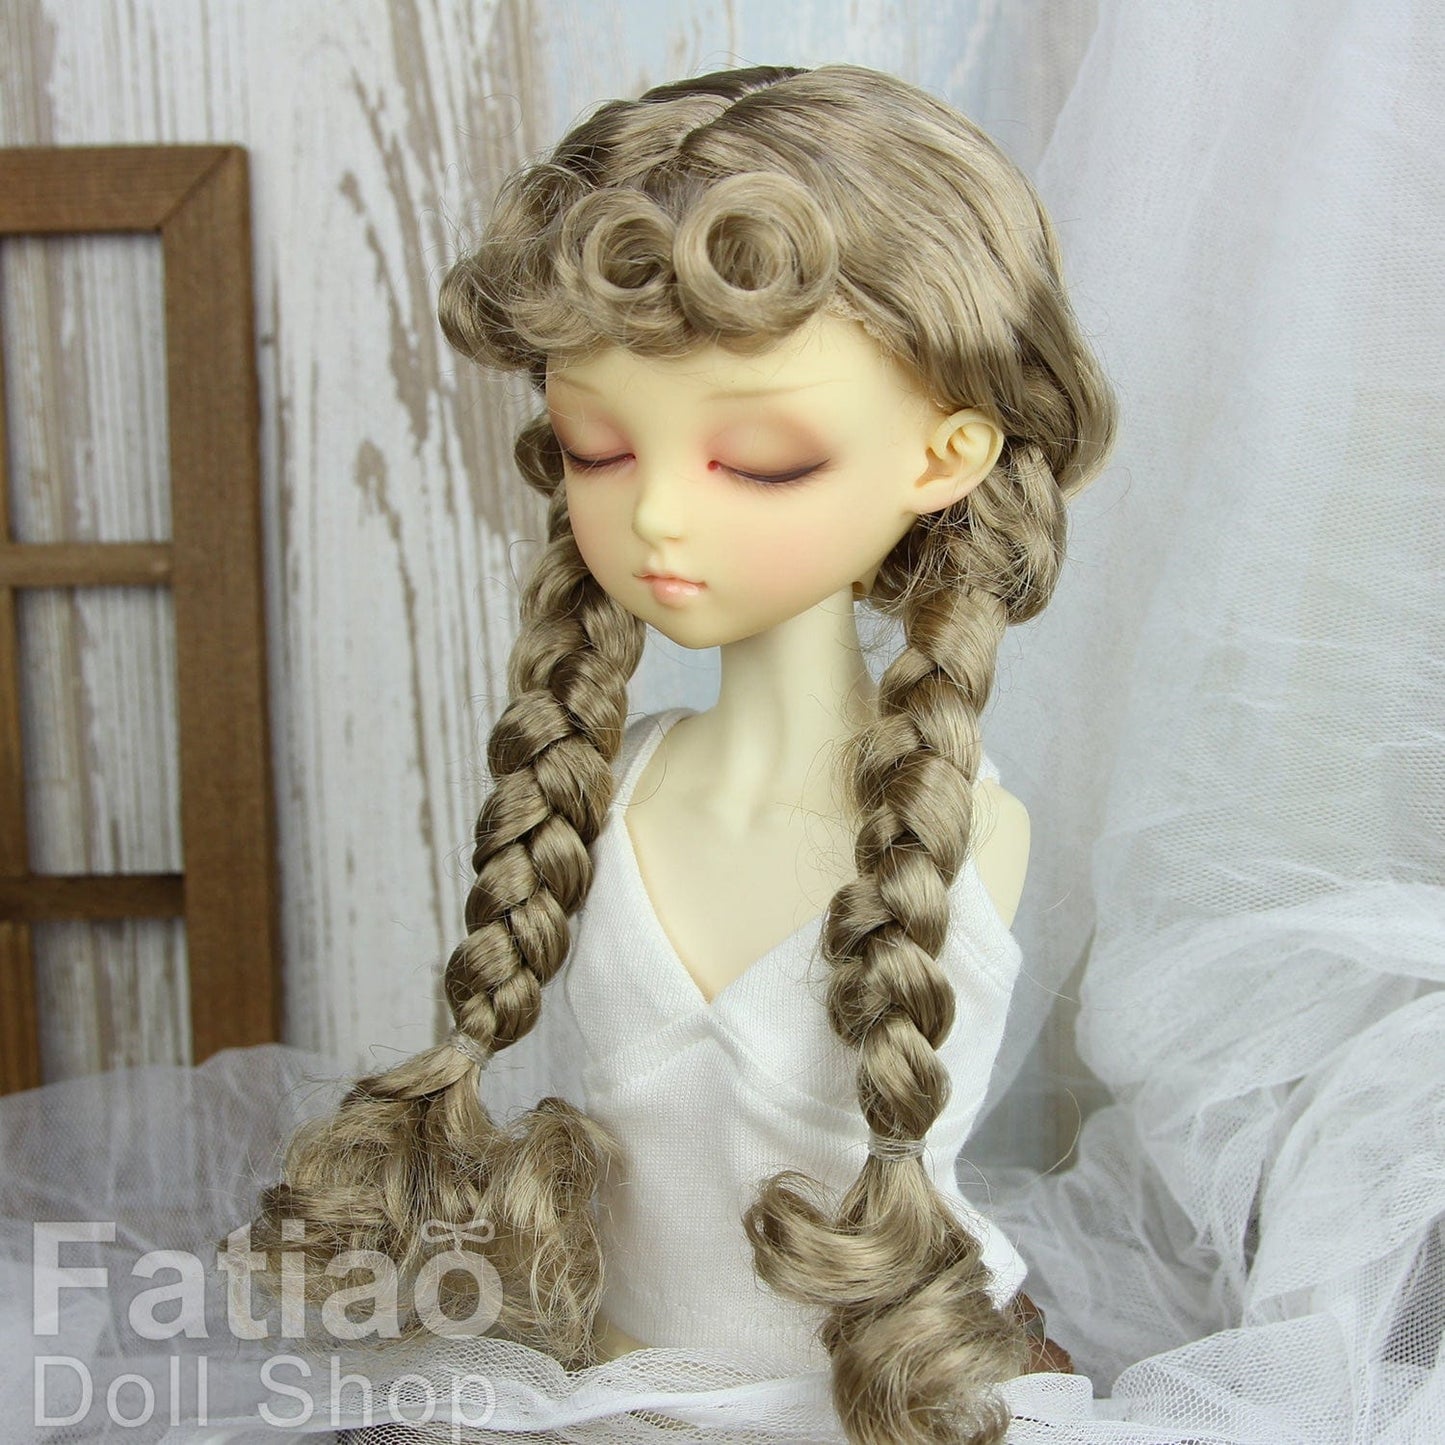 【Fatiao Doll Shop】FWF-723 娃用假髮 多色 / 7-8吋 BJD 4分 iMda3.0